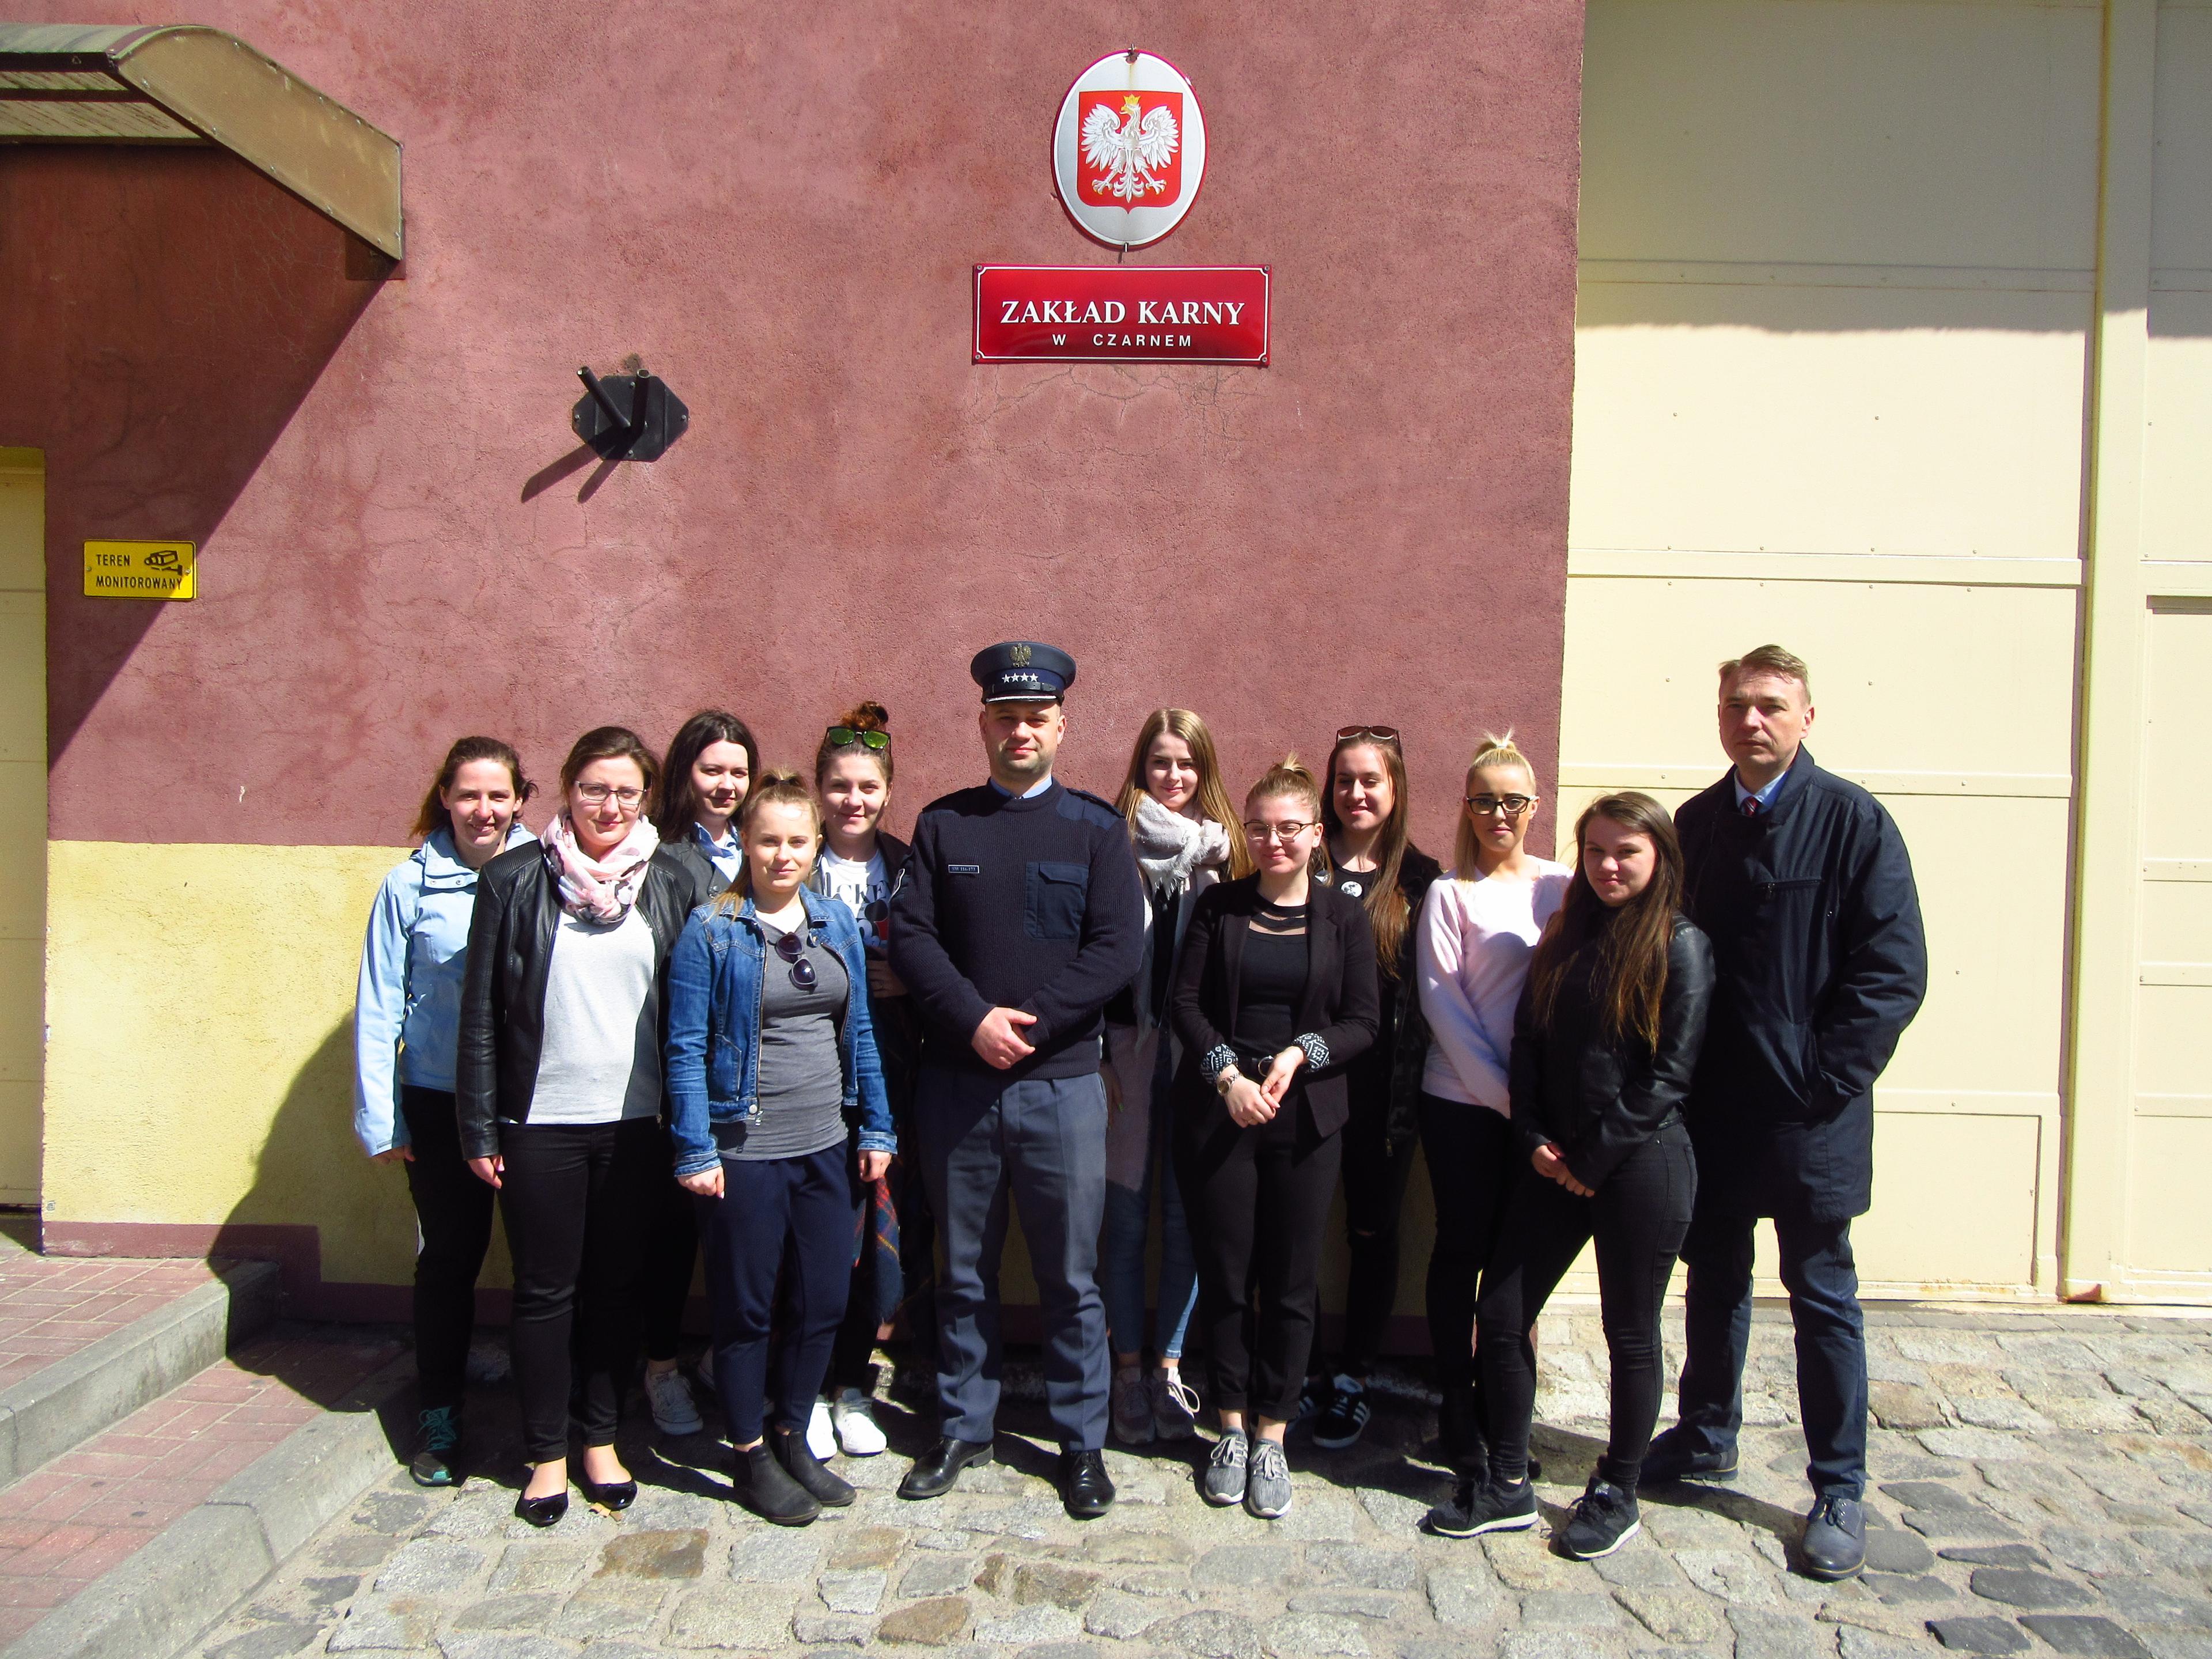 Wizyta studentów w Zakładzie Karnym w Czarnem